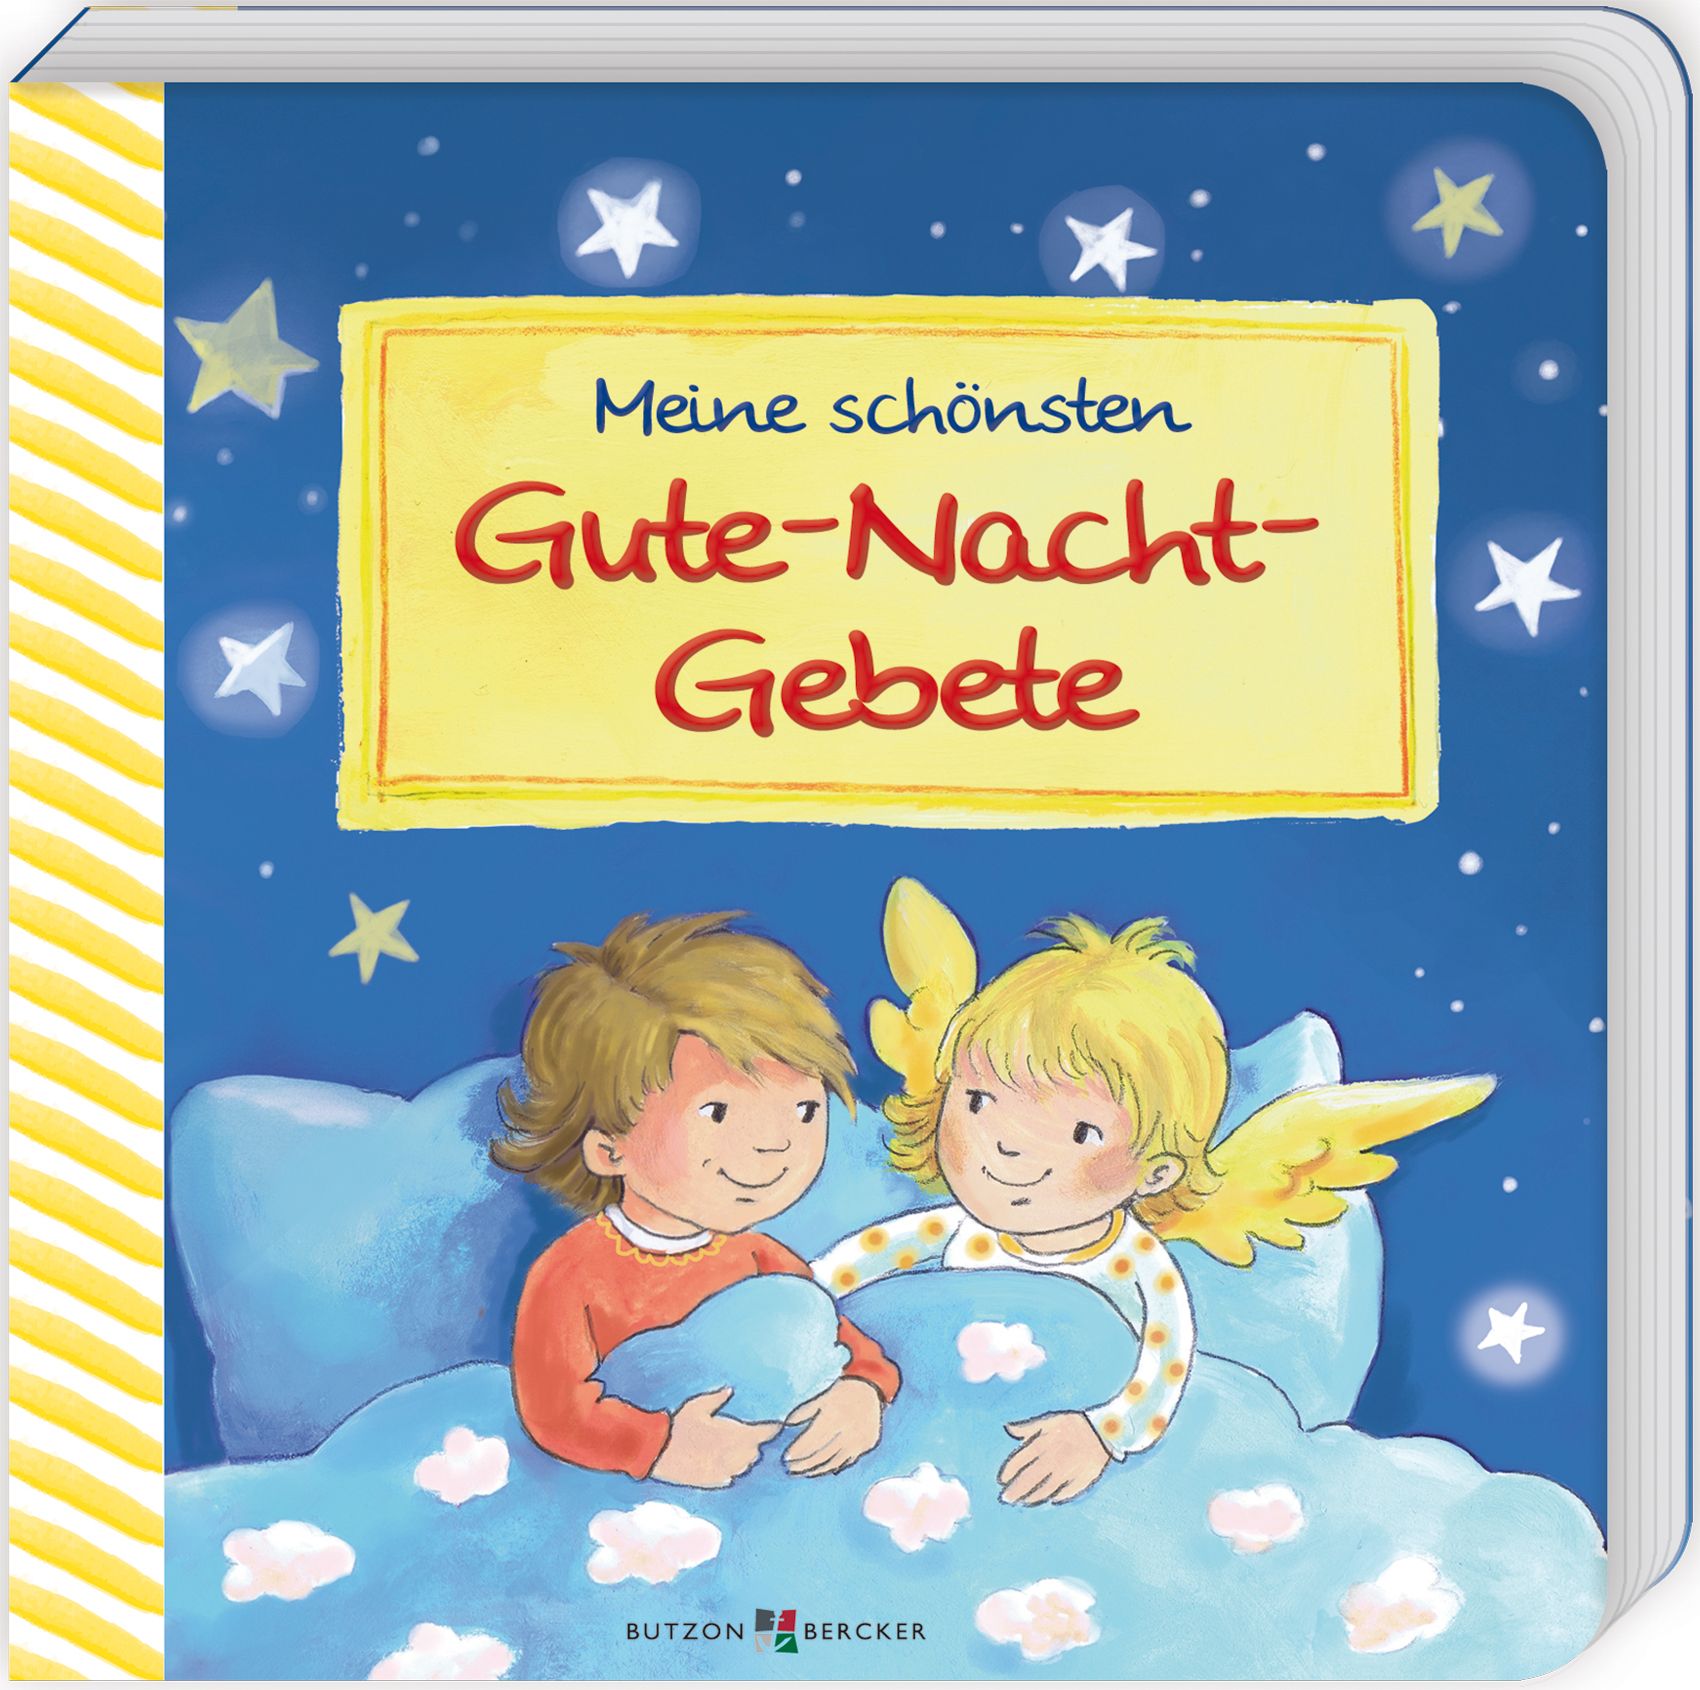 Kinderbuch - Meine schönsten Gute-Nacht-Gebete